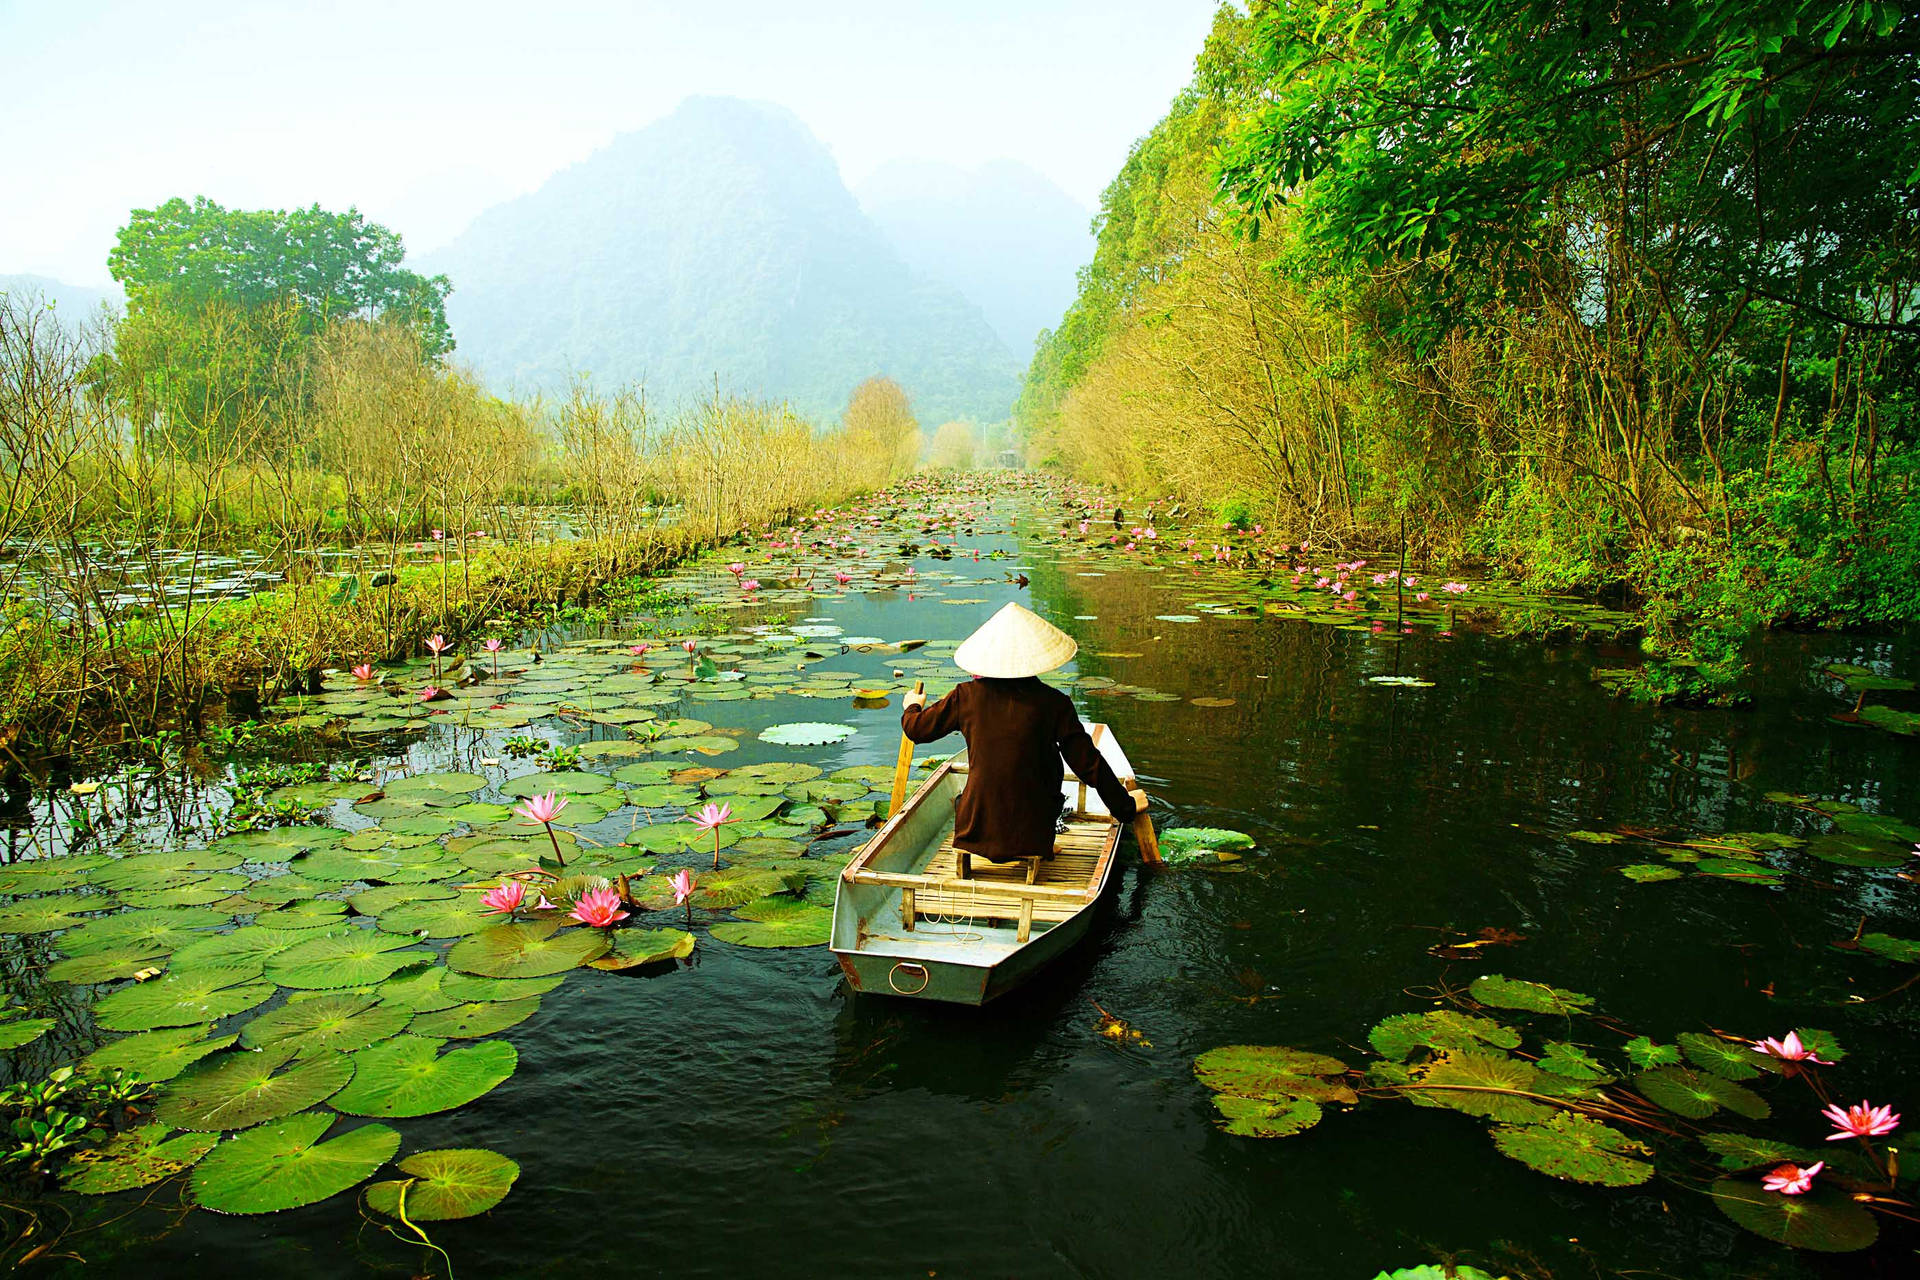 Hồ sen Hà Nội: Hồ sen Hà Nội là một danh lam thắng cảnh nổi tiếng ở Việt Nam, nổi tiếng với vẻ đẹp trầm mặc và yên bình. Cùng xem những bức ảnh tuyệt đẹp của Hồ sen Hà Nội để tận hưởng sự thanh bình và cảm nhận cuộc sống chậm rãi của Hà Nội, đất nước Việt Nam.